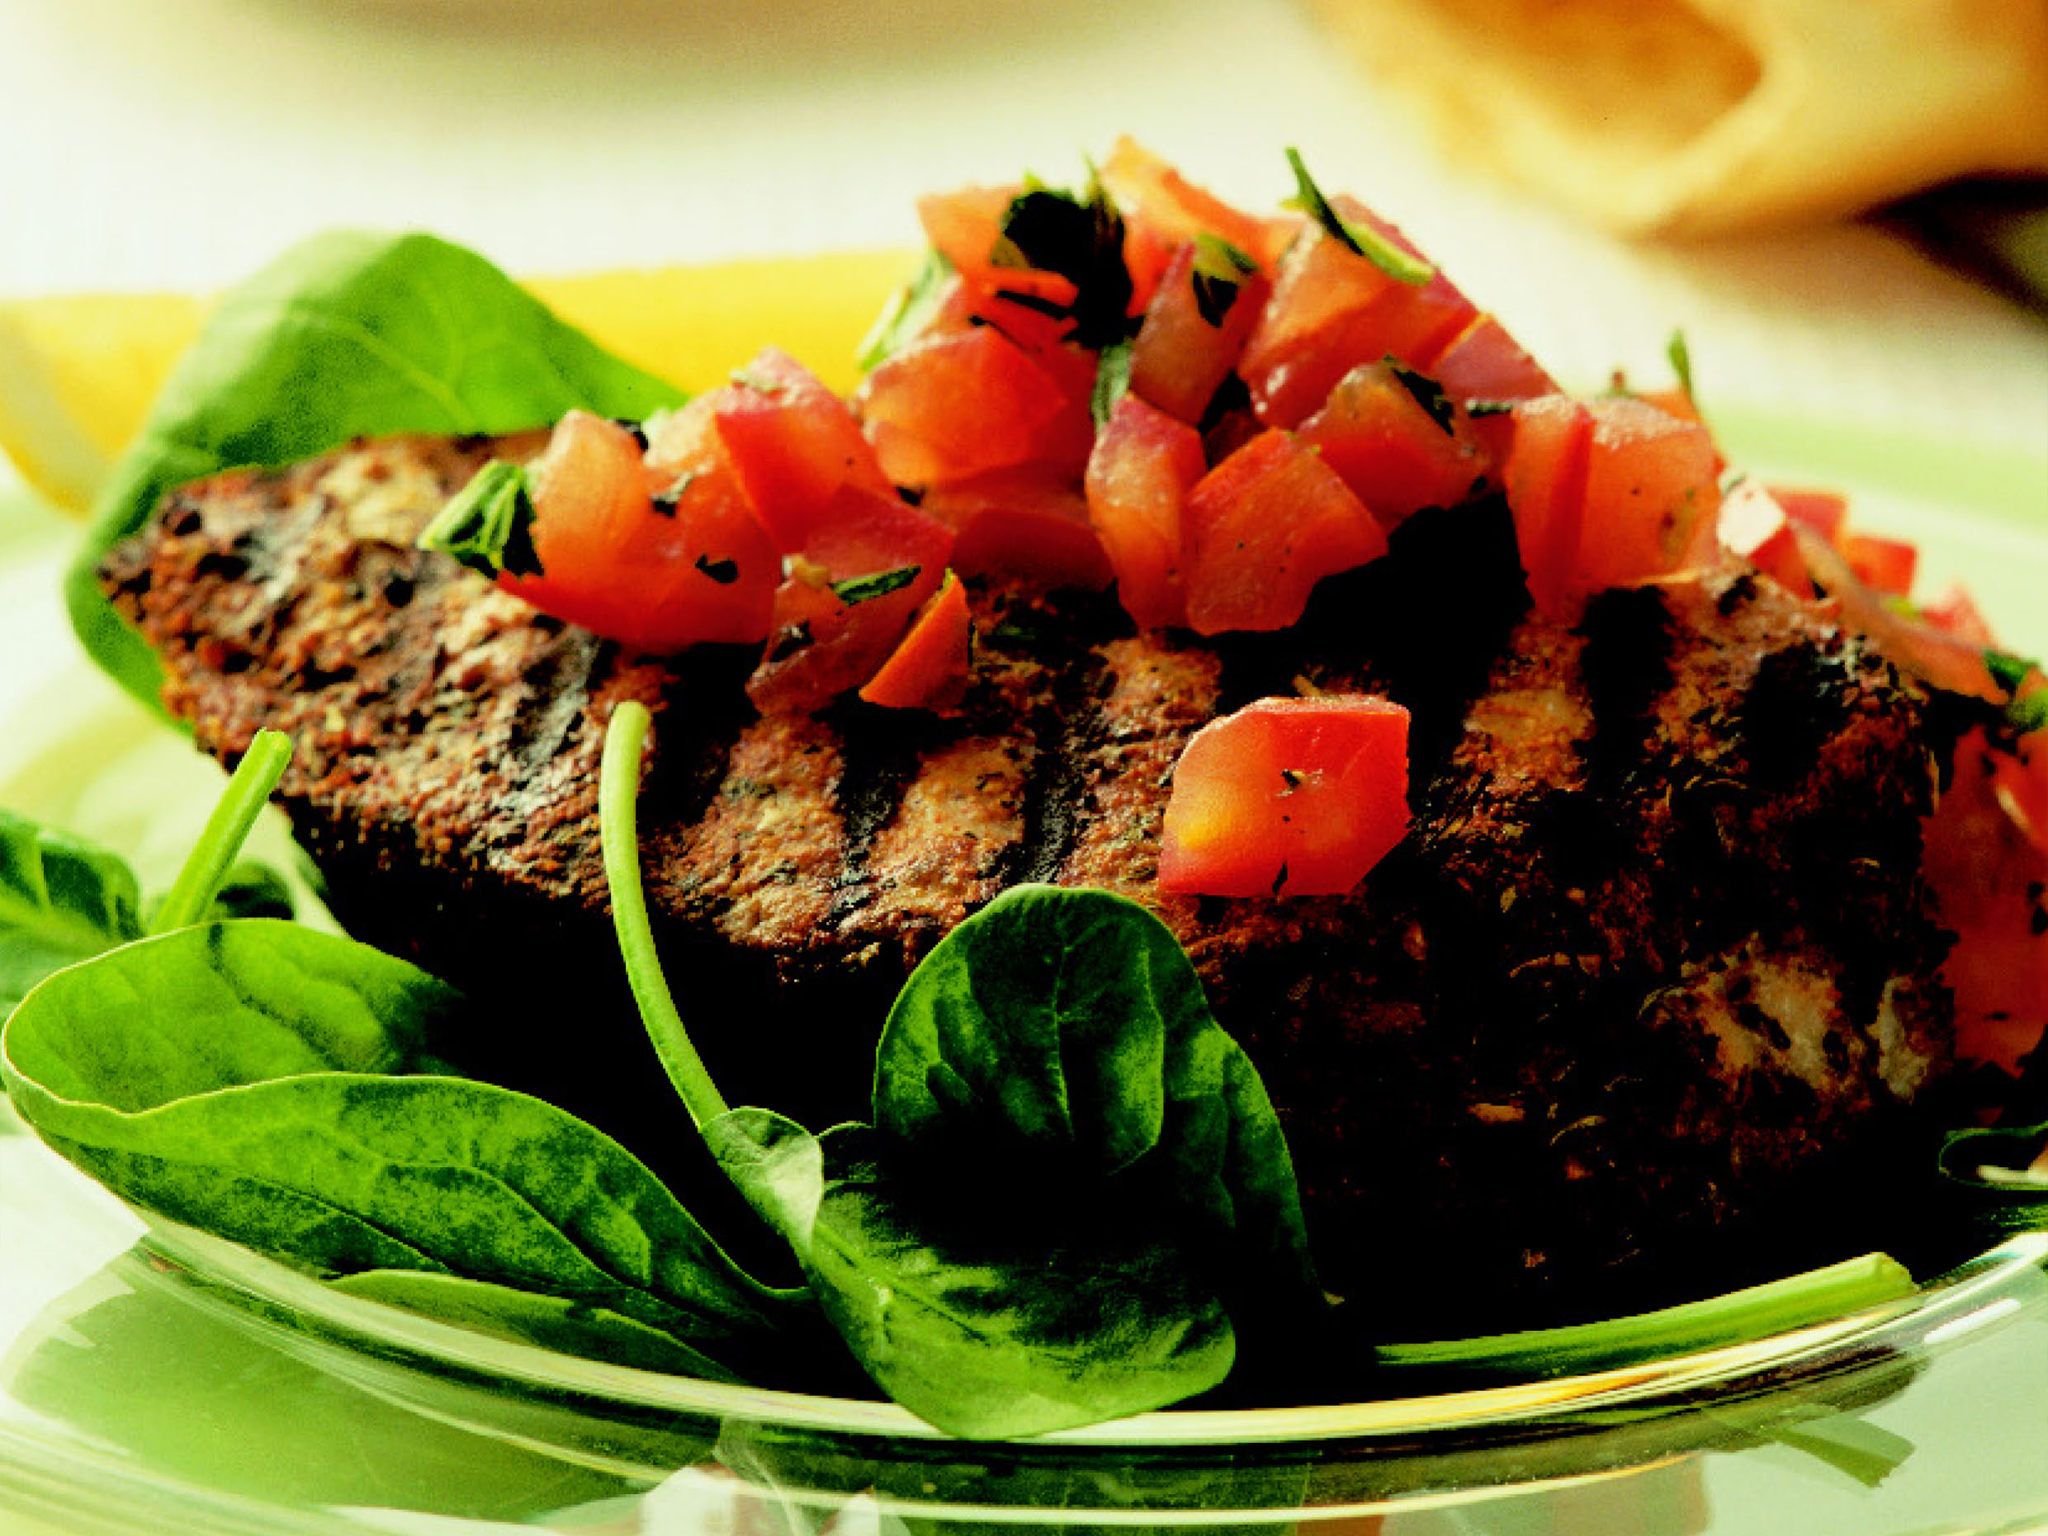 seasoned tuna steaks with tomato salad